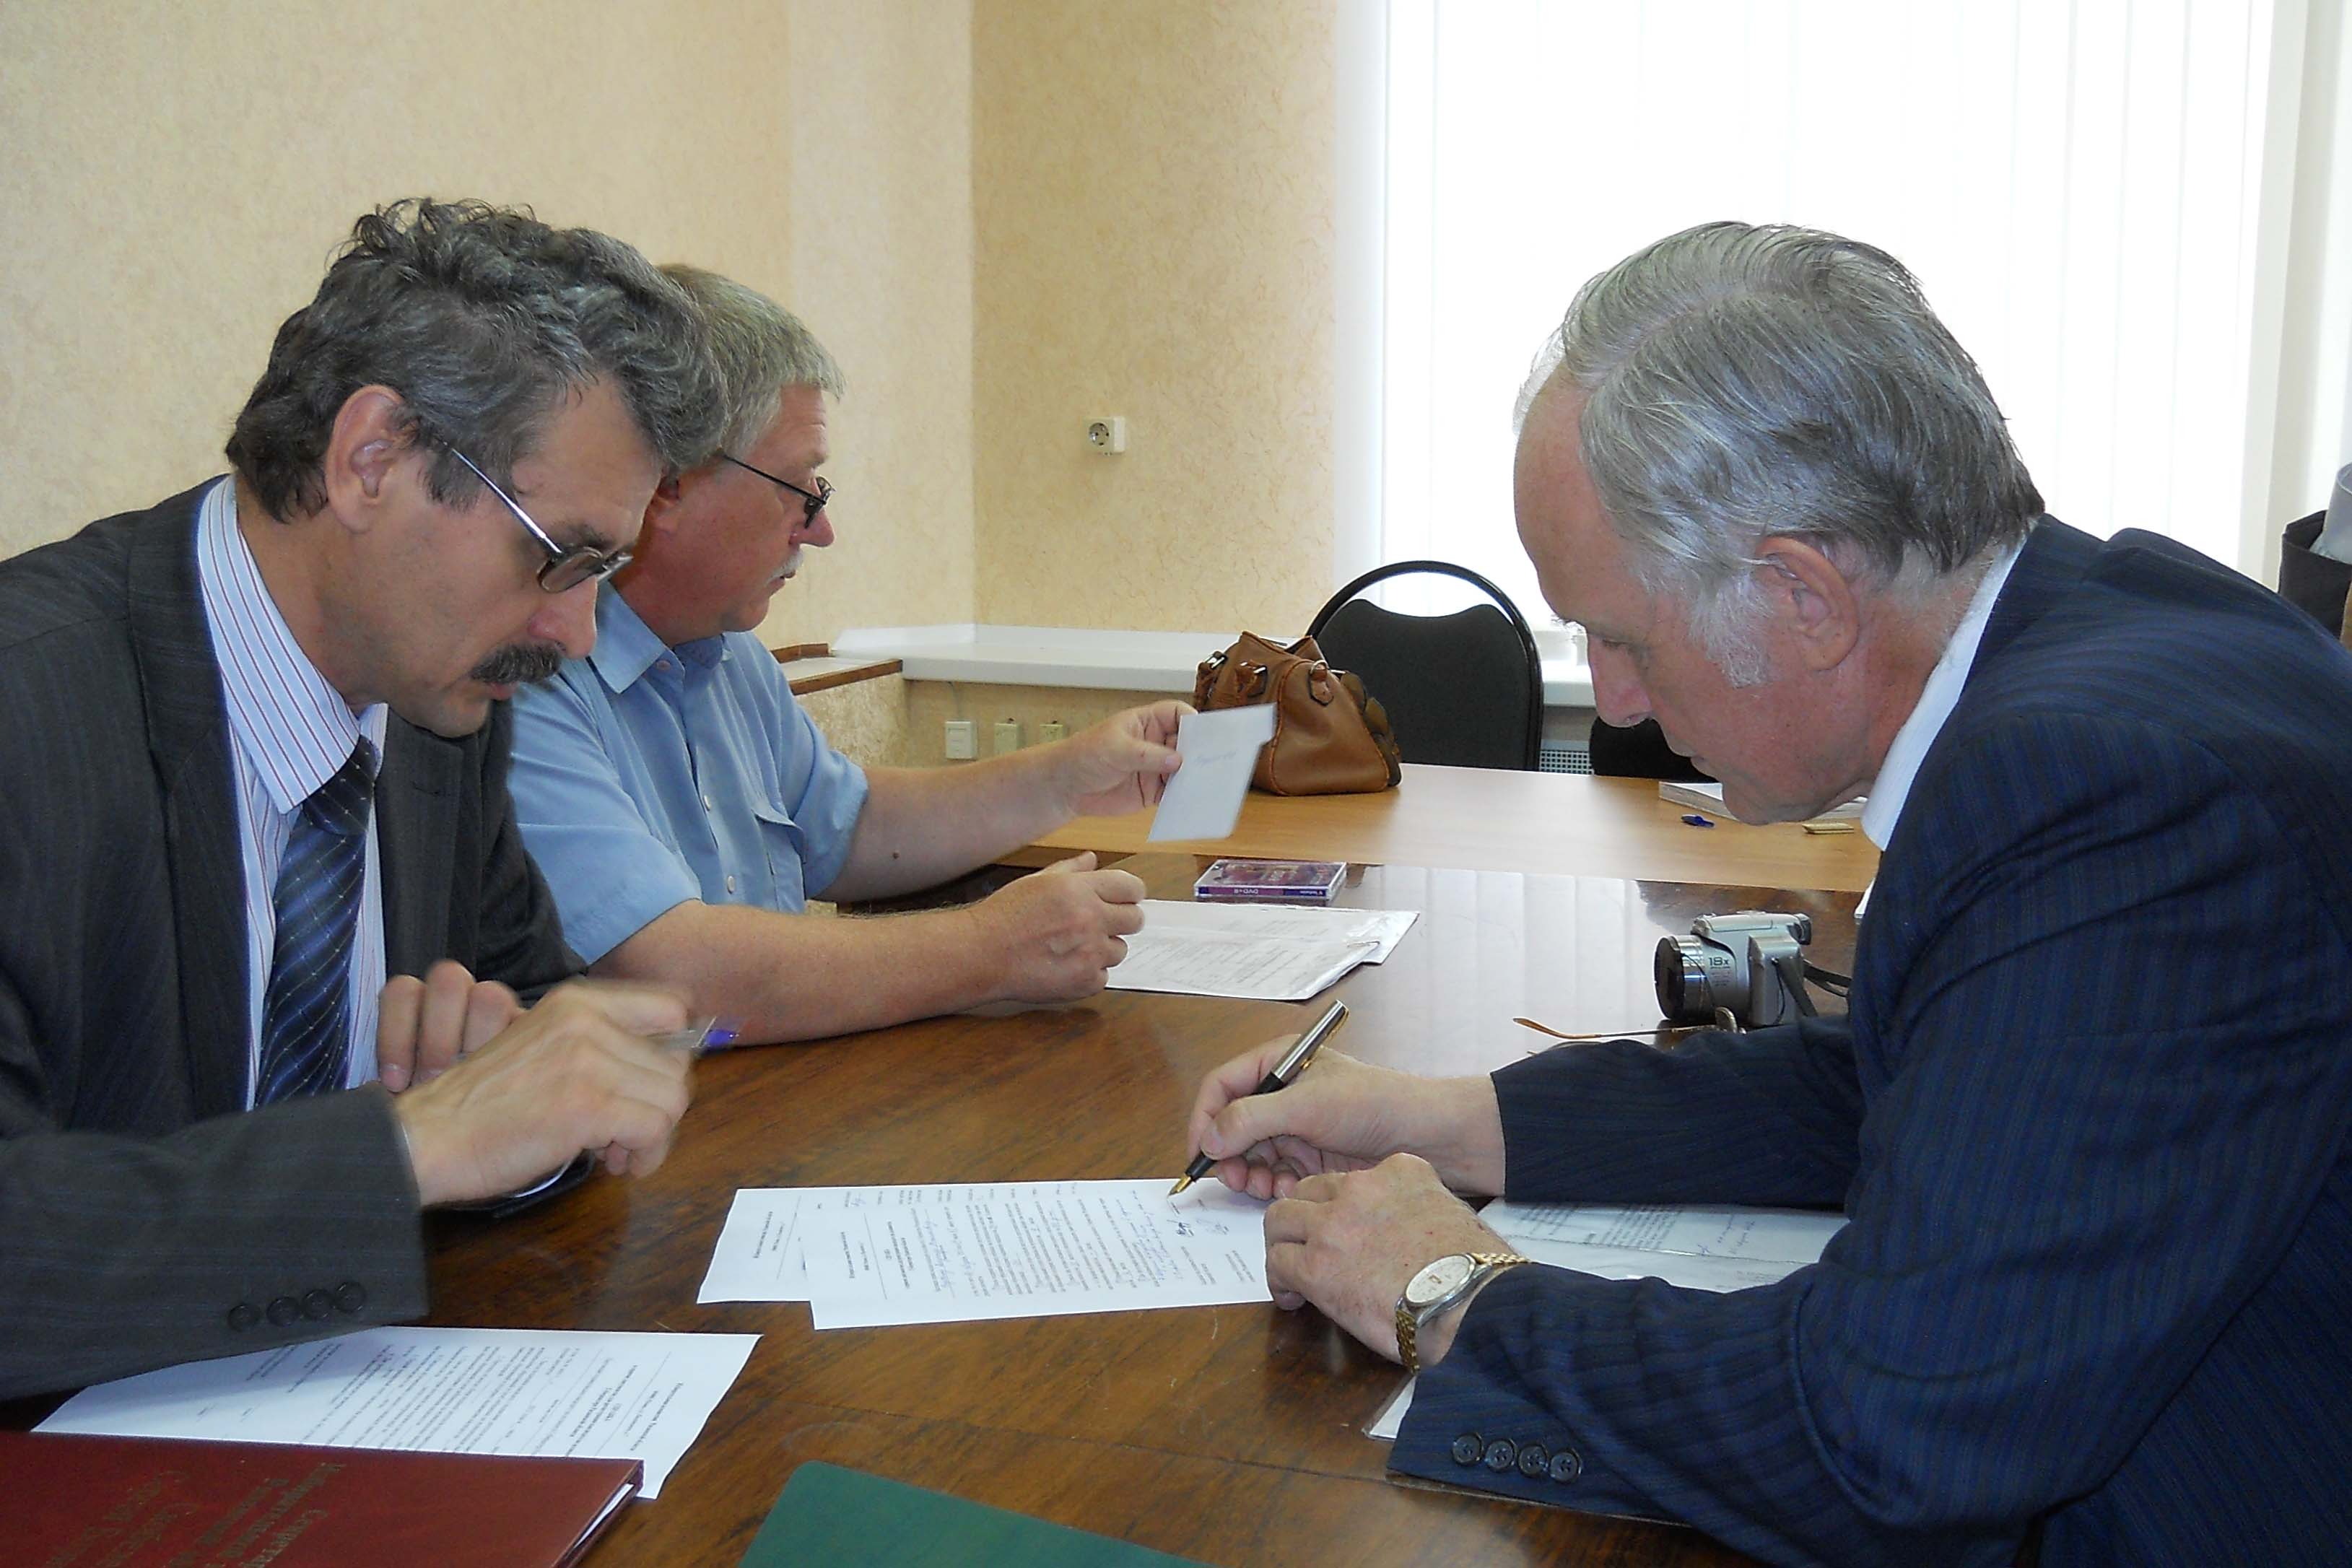 Кандидат в губернаторы от КПРФ Федоткин В.Н. подал документы для регистрации в избирательную комиссию Рязанской области.